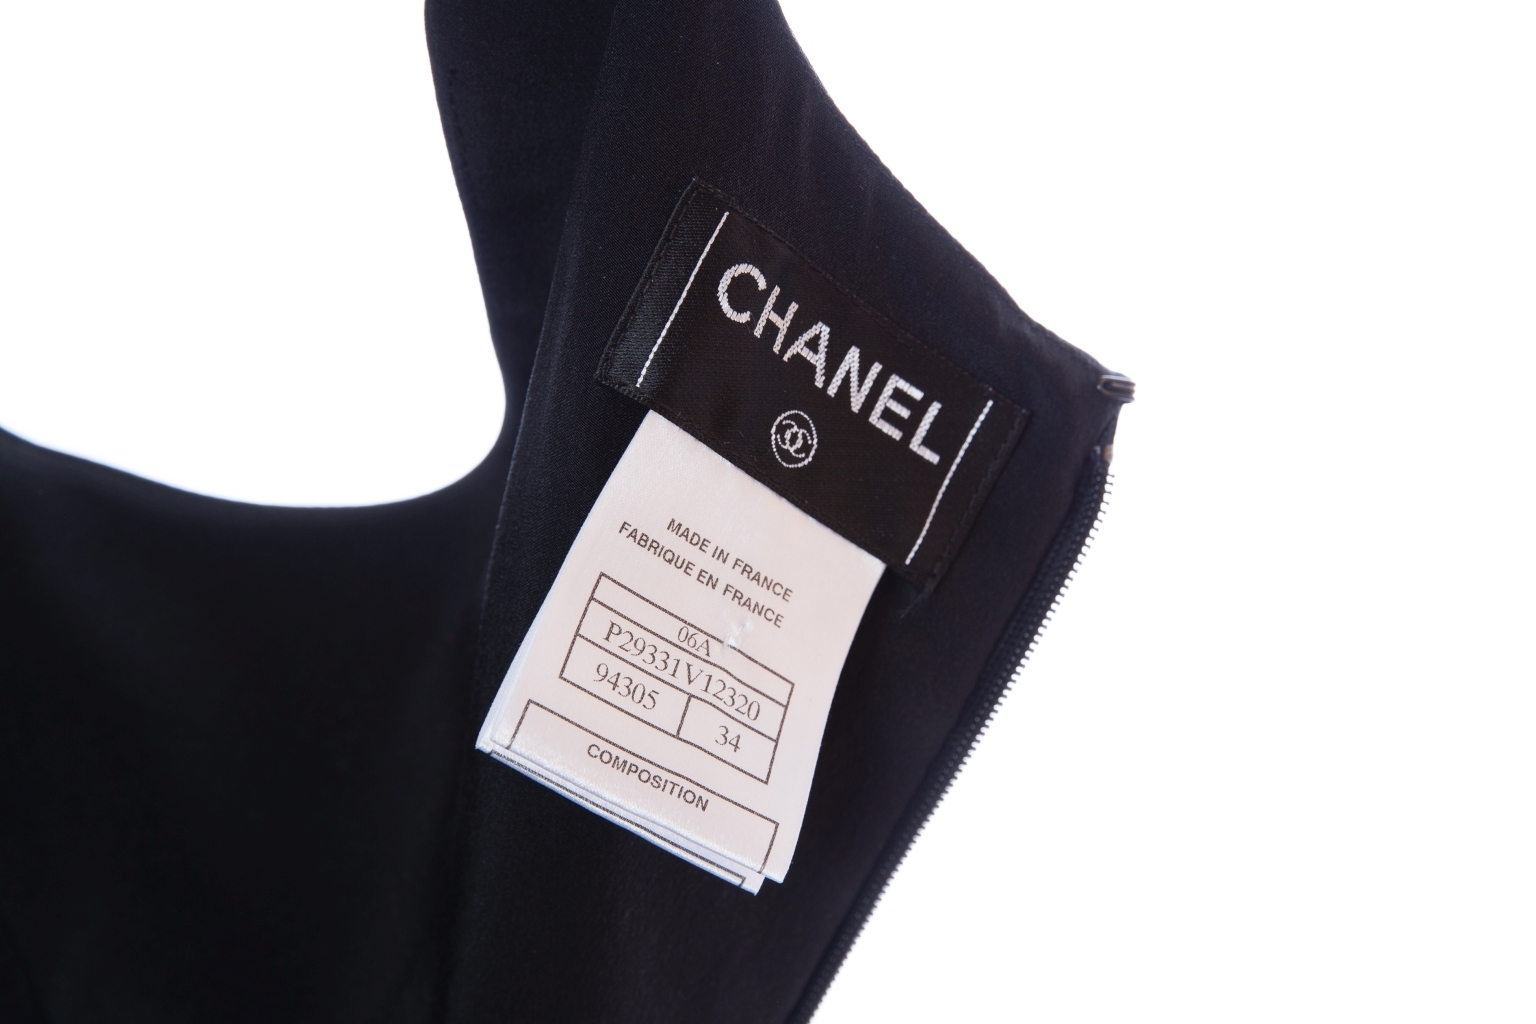 Женственное платье из шелка черного цвета от Chanel, 34 размер.